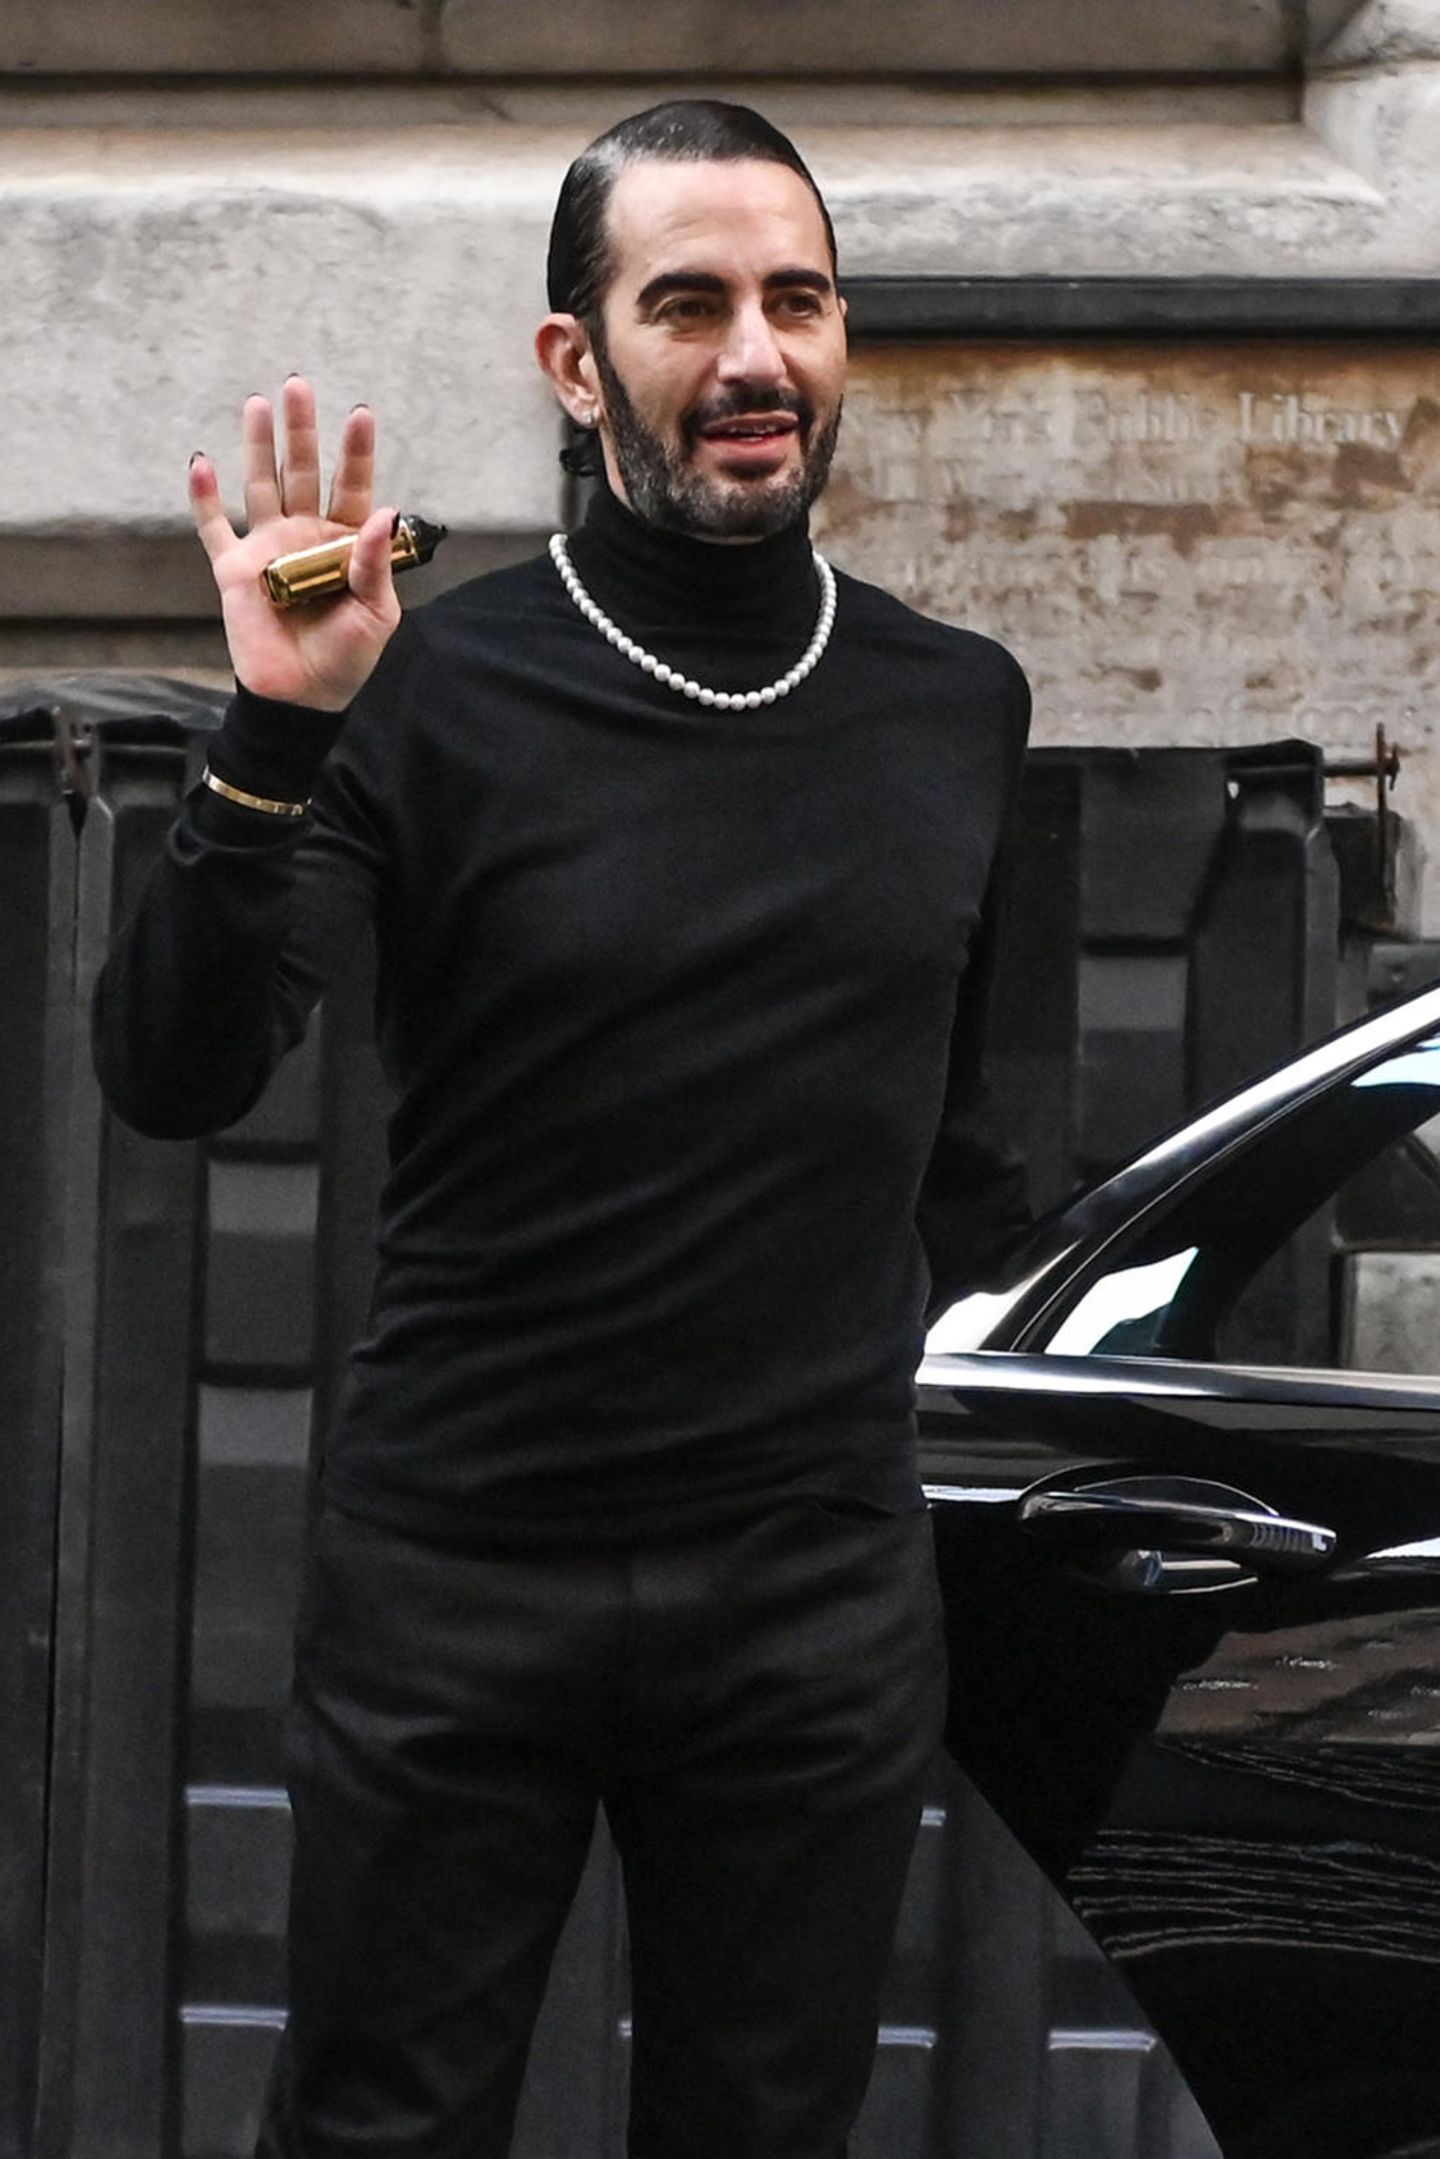 Komplett in Schwarz gekleidet, eine auffällige Halskette, die Haare streng zurück gestylt: So zeigte sich Modedesigner Marc Jacobs noch vor wenigen Tagen zu seiner Fashion Show in New York. Kurz danach ging es für ihn ins Krankenhaus – für eine Schönheitsoperation. 